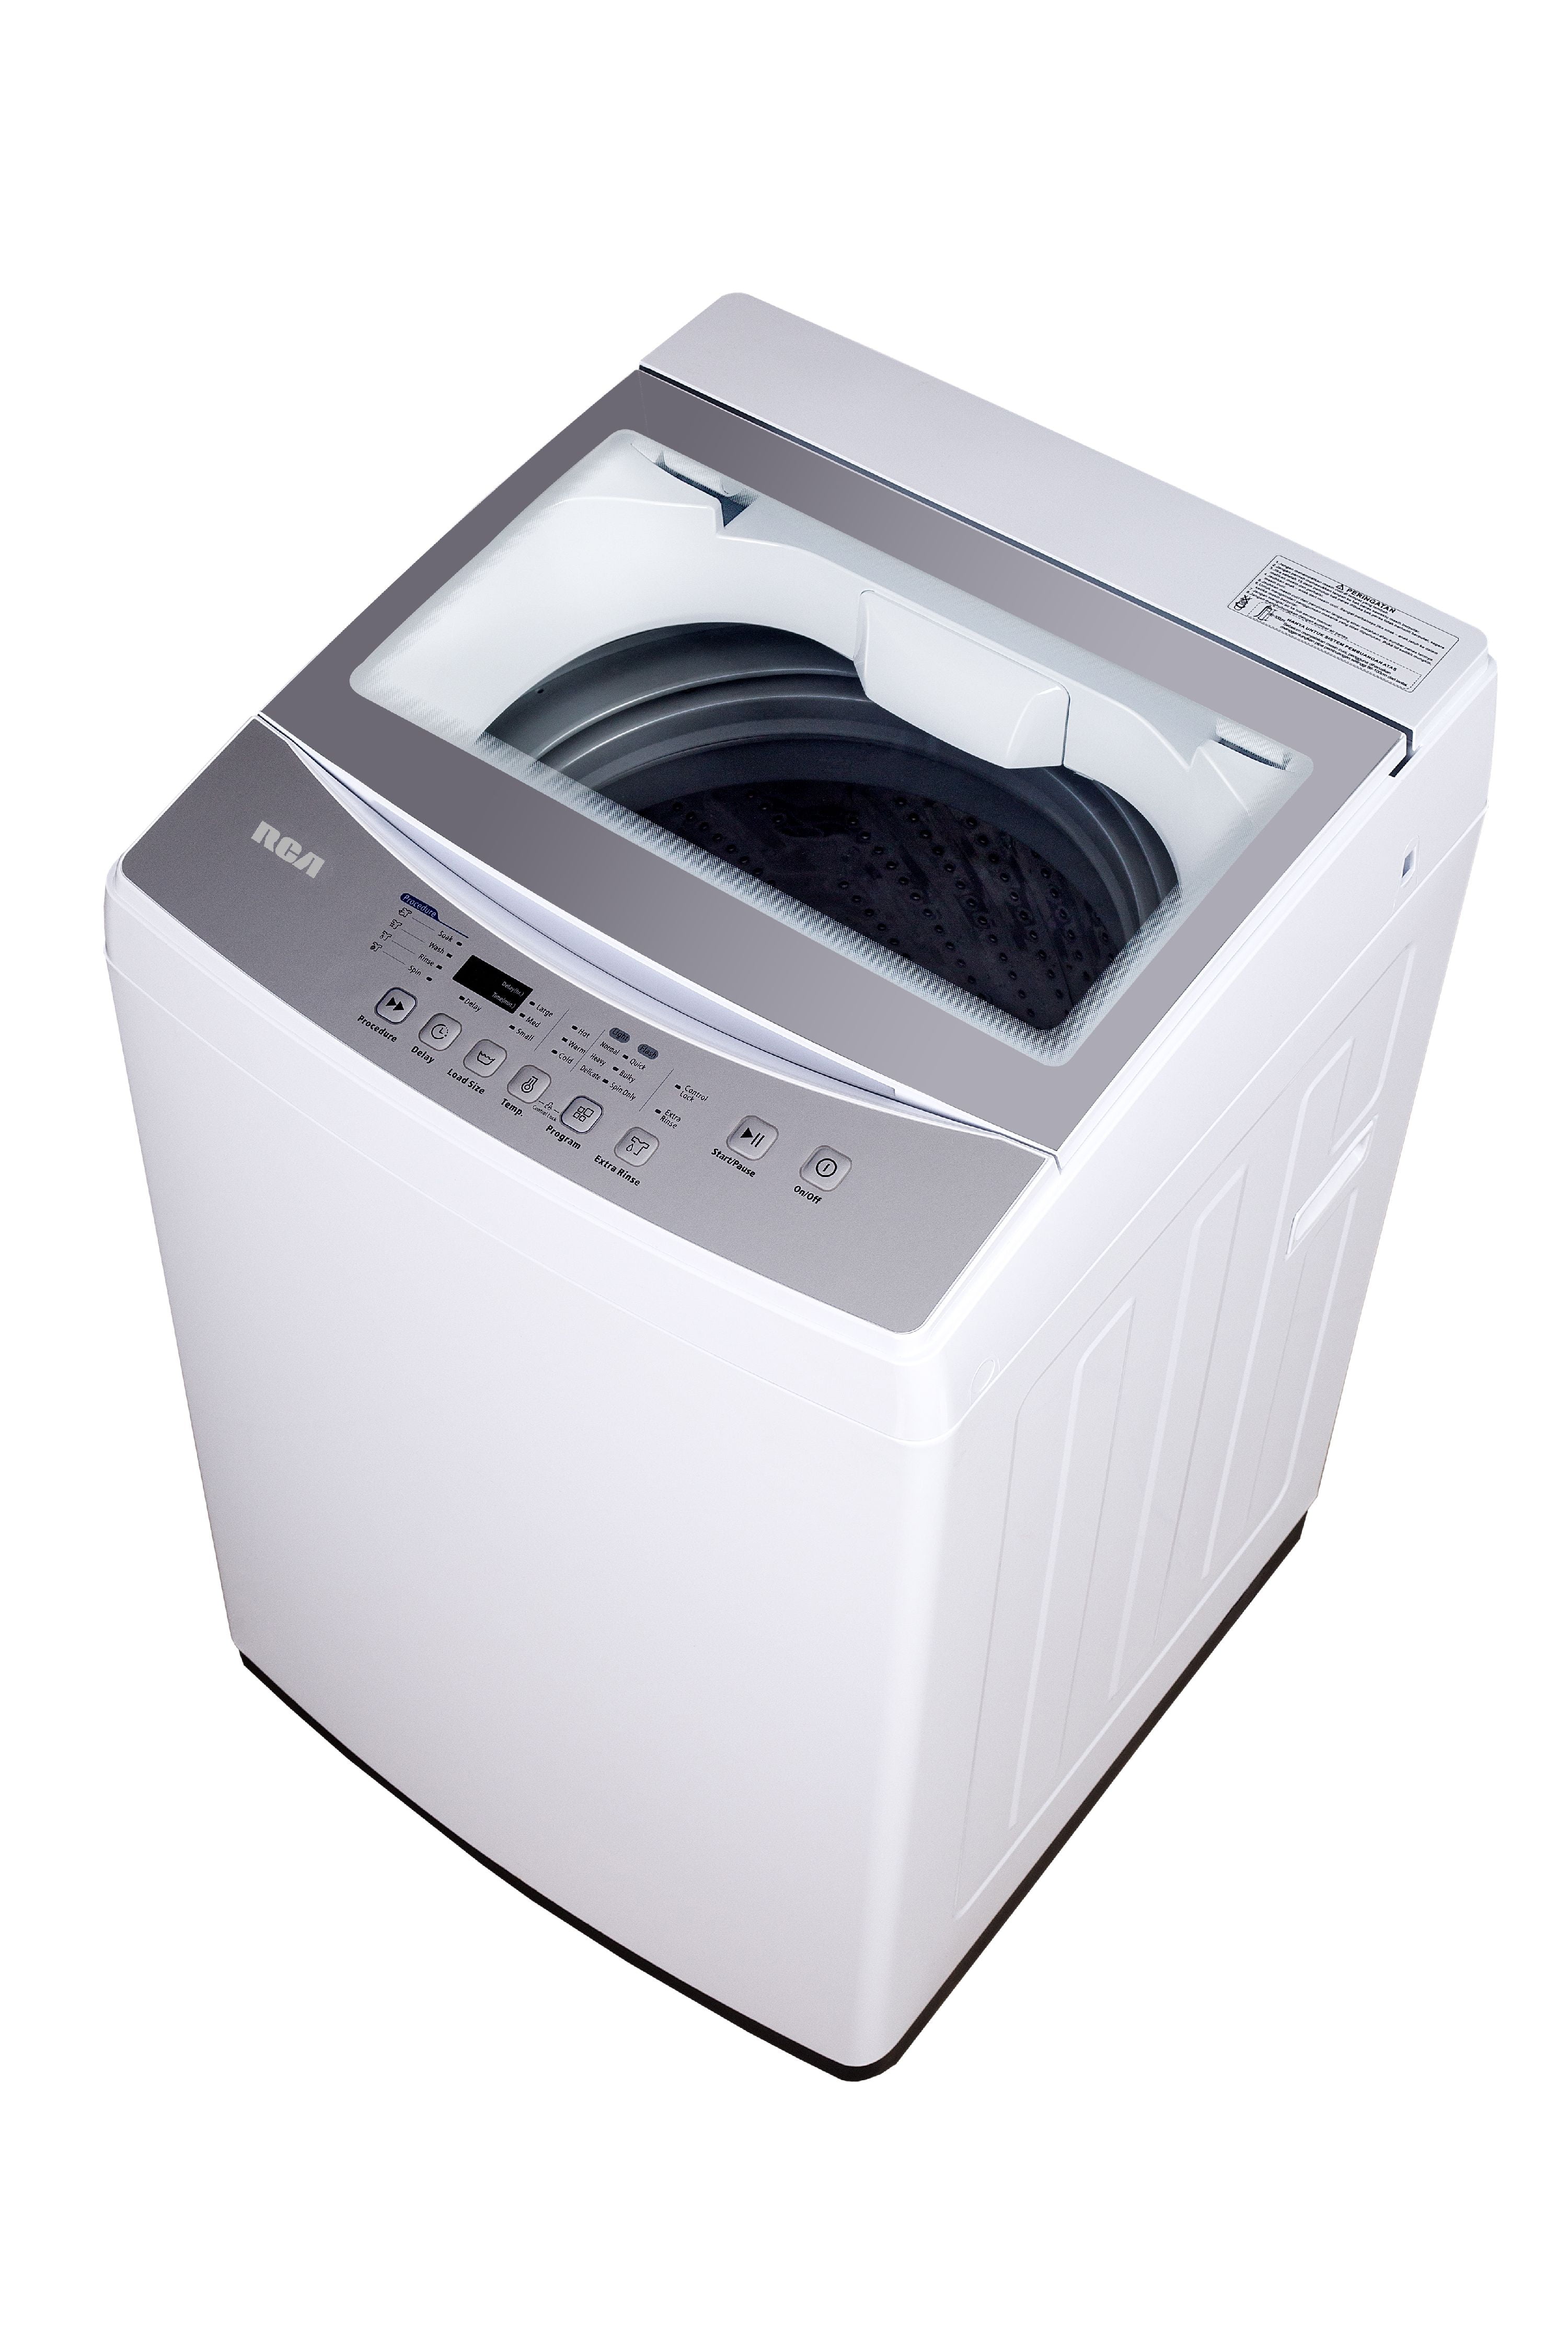 mini washing machine walmart